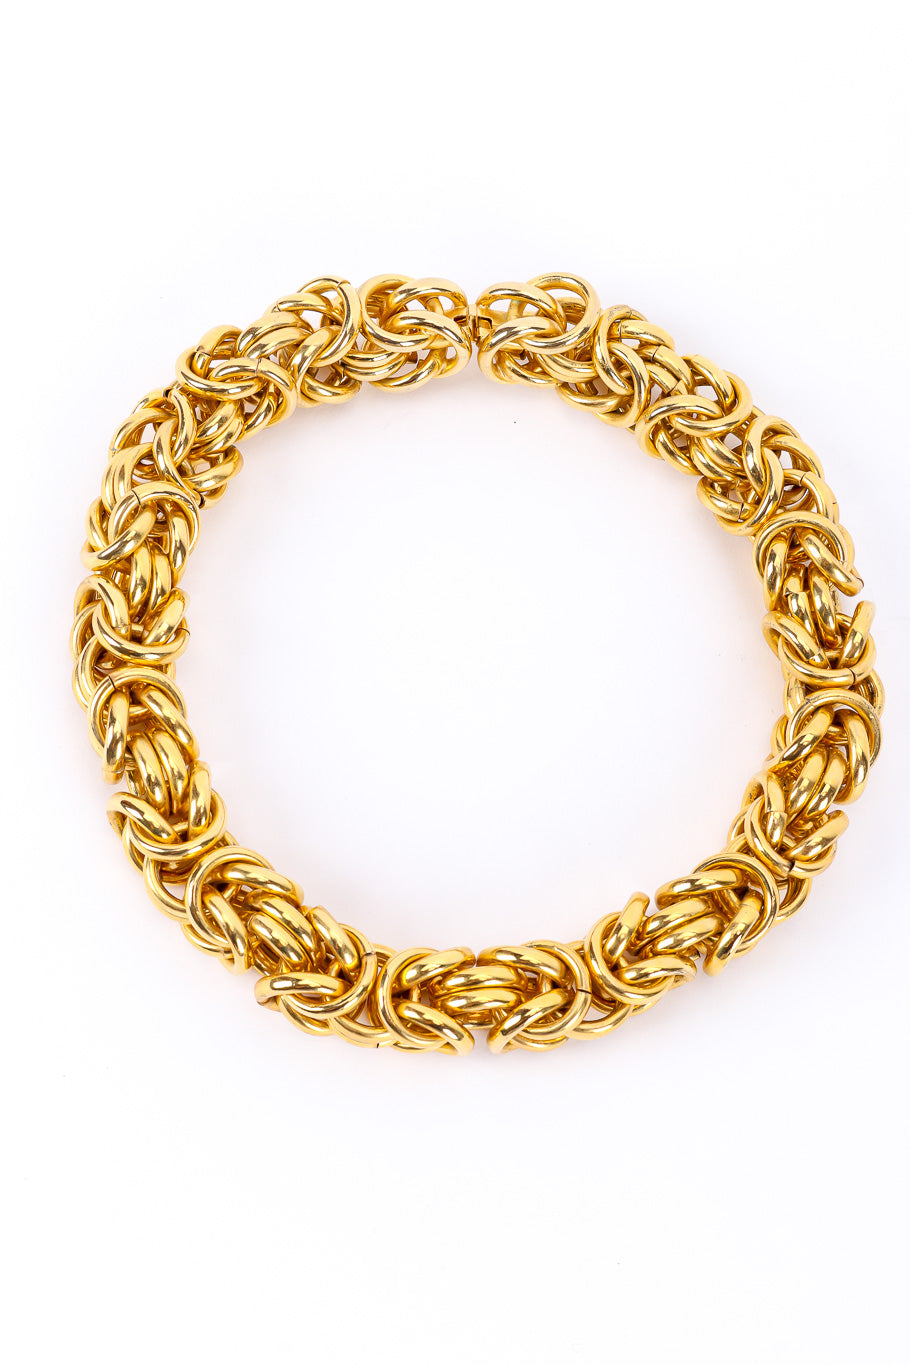 Vintage Chunky Byzantine Link Choker Necklace full view @Recessla